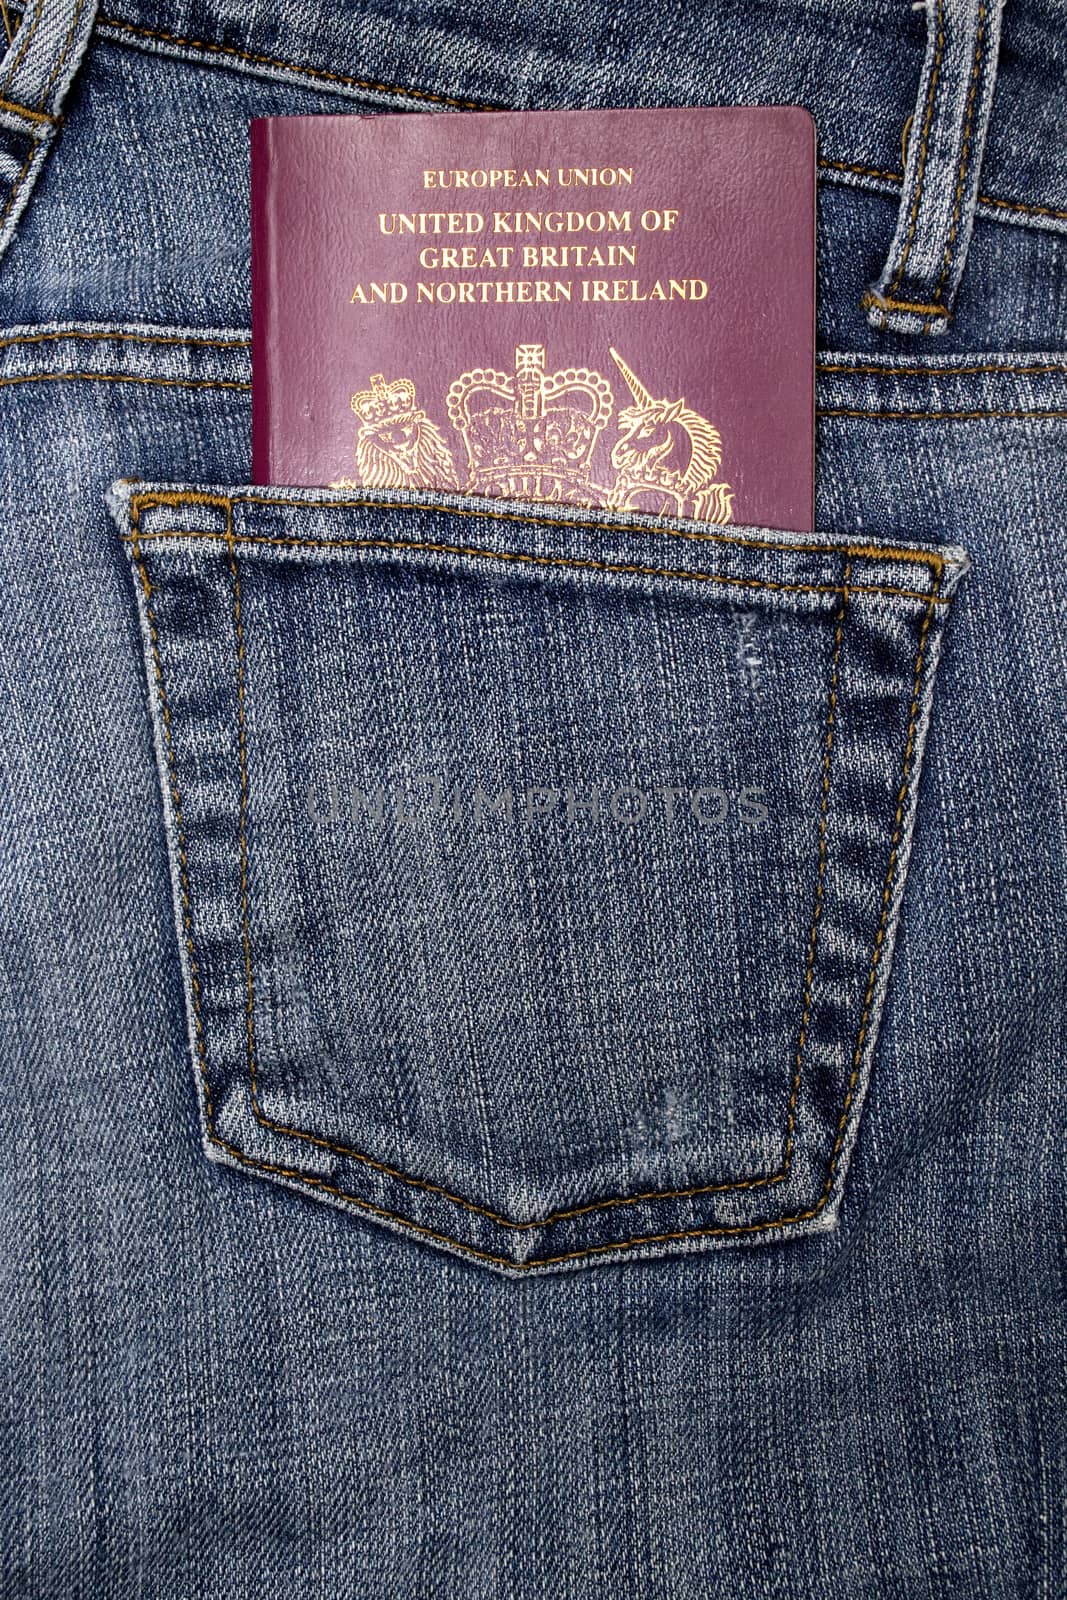 British passport in a denim jeans pocket